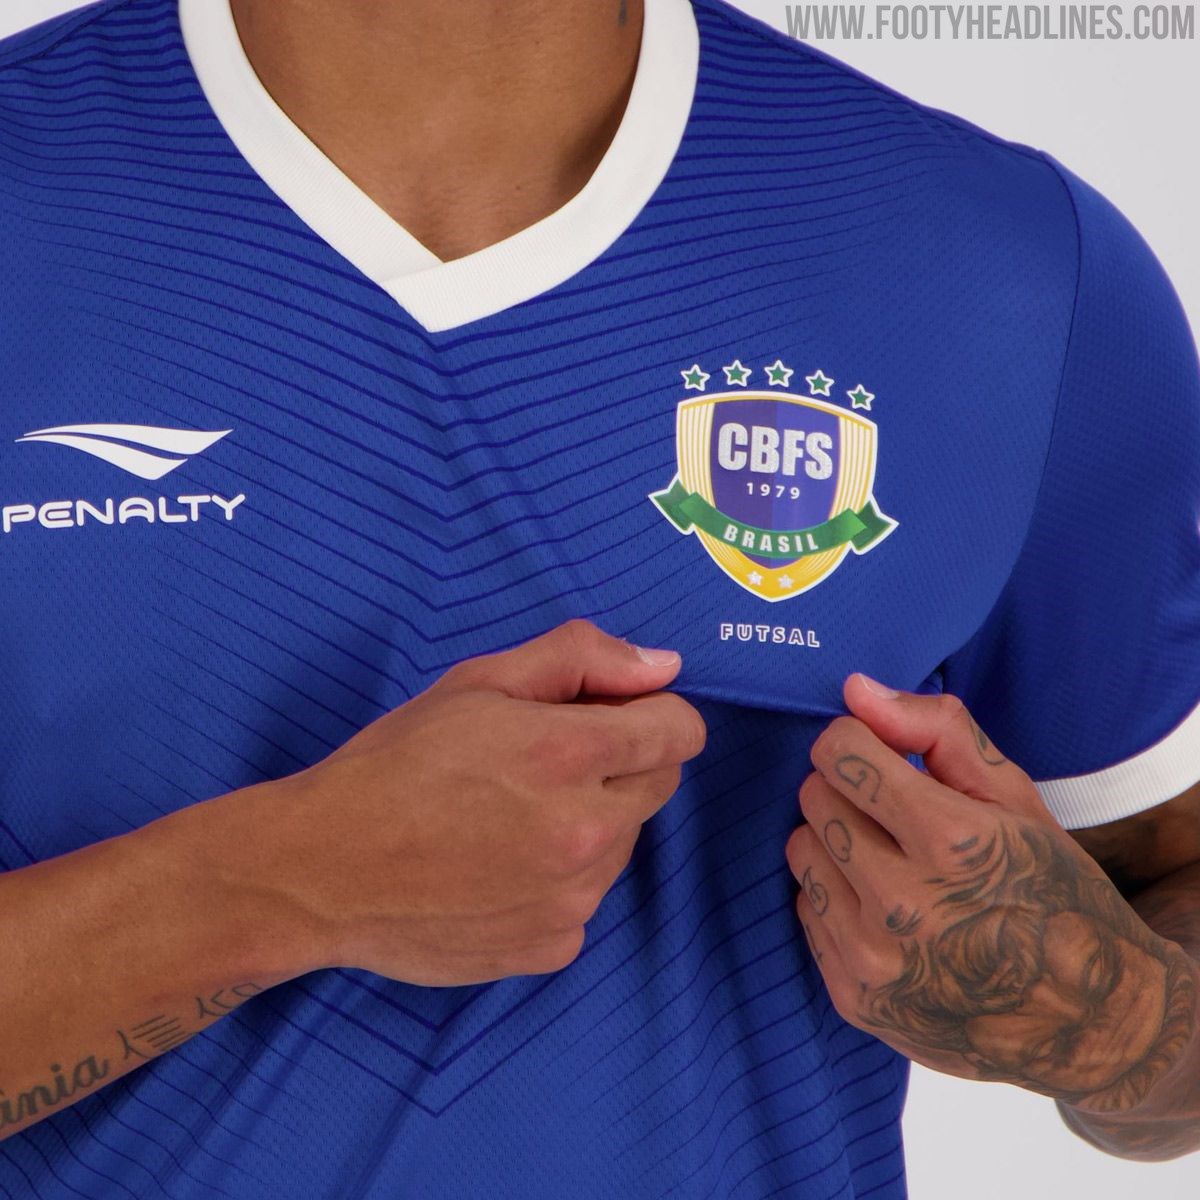 Brazil Futsal 20-21 Home & Away Kits Released - Footy Headlines